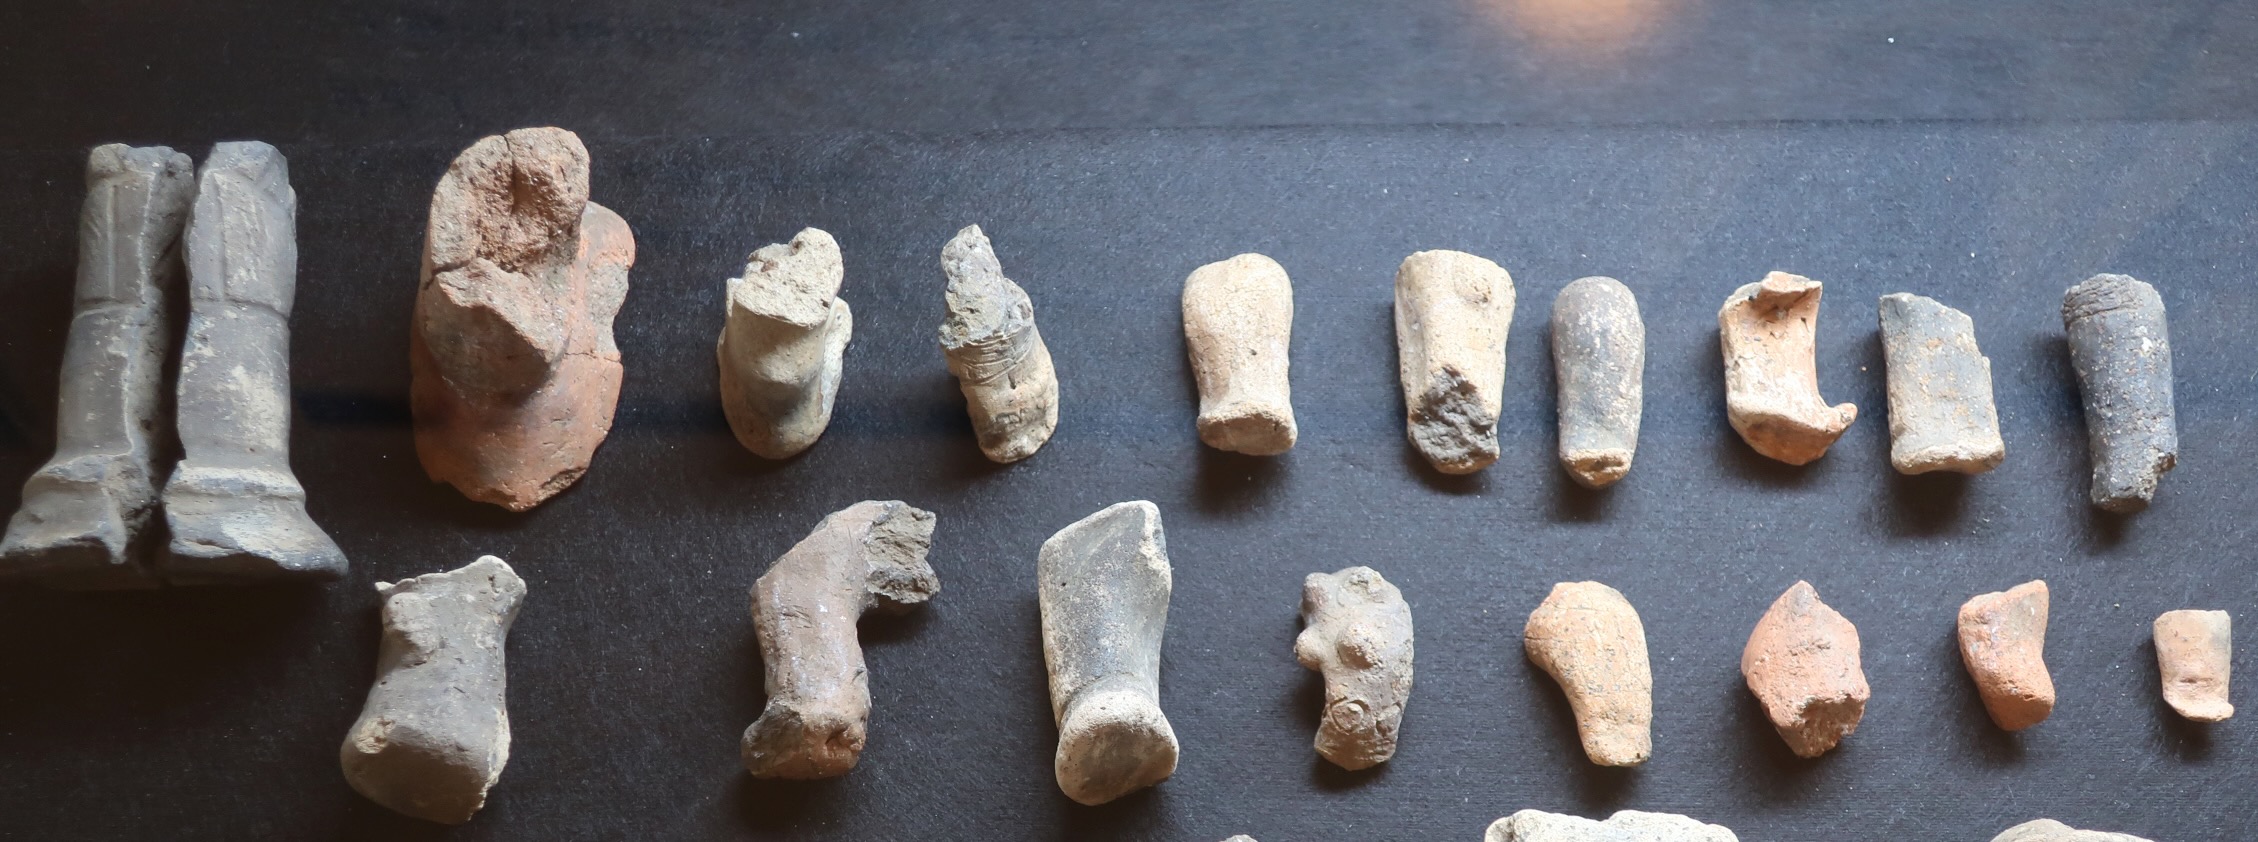 北杜市石堂B遺跡から出土の土偶の欠片たち